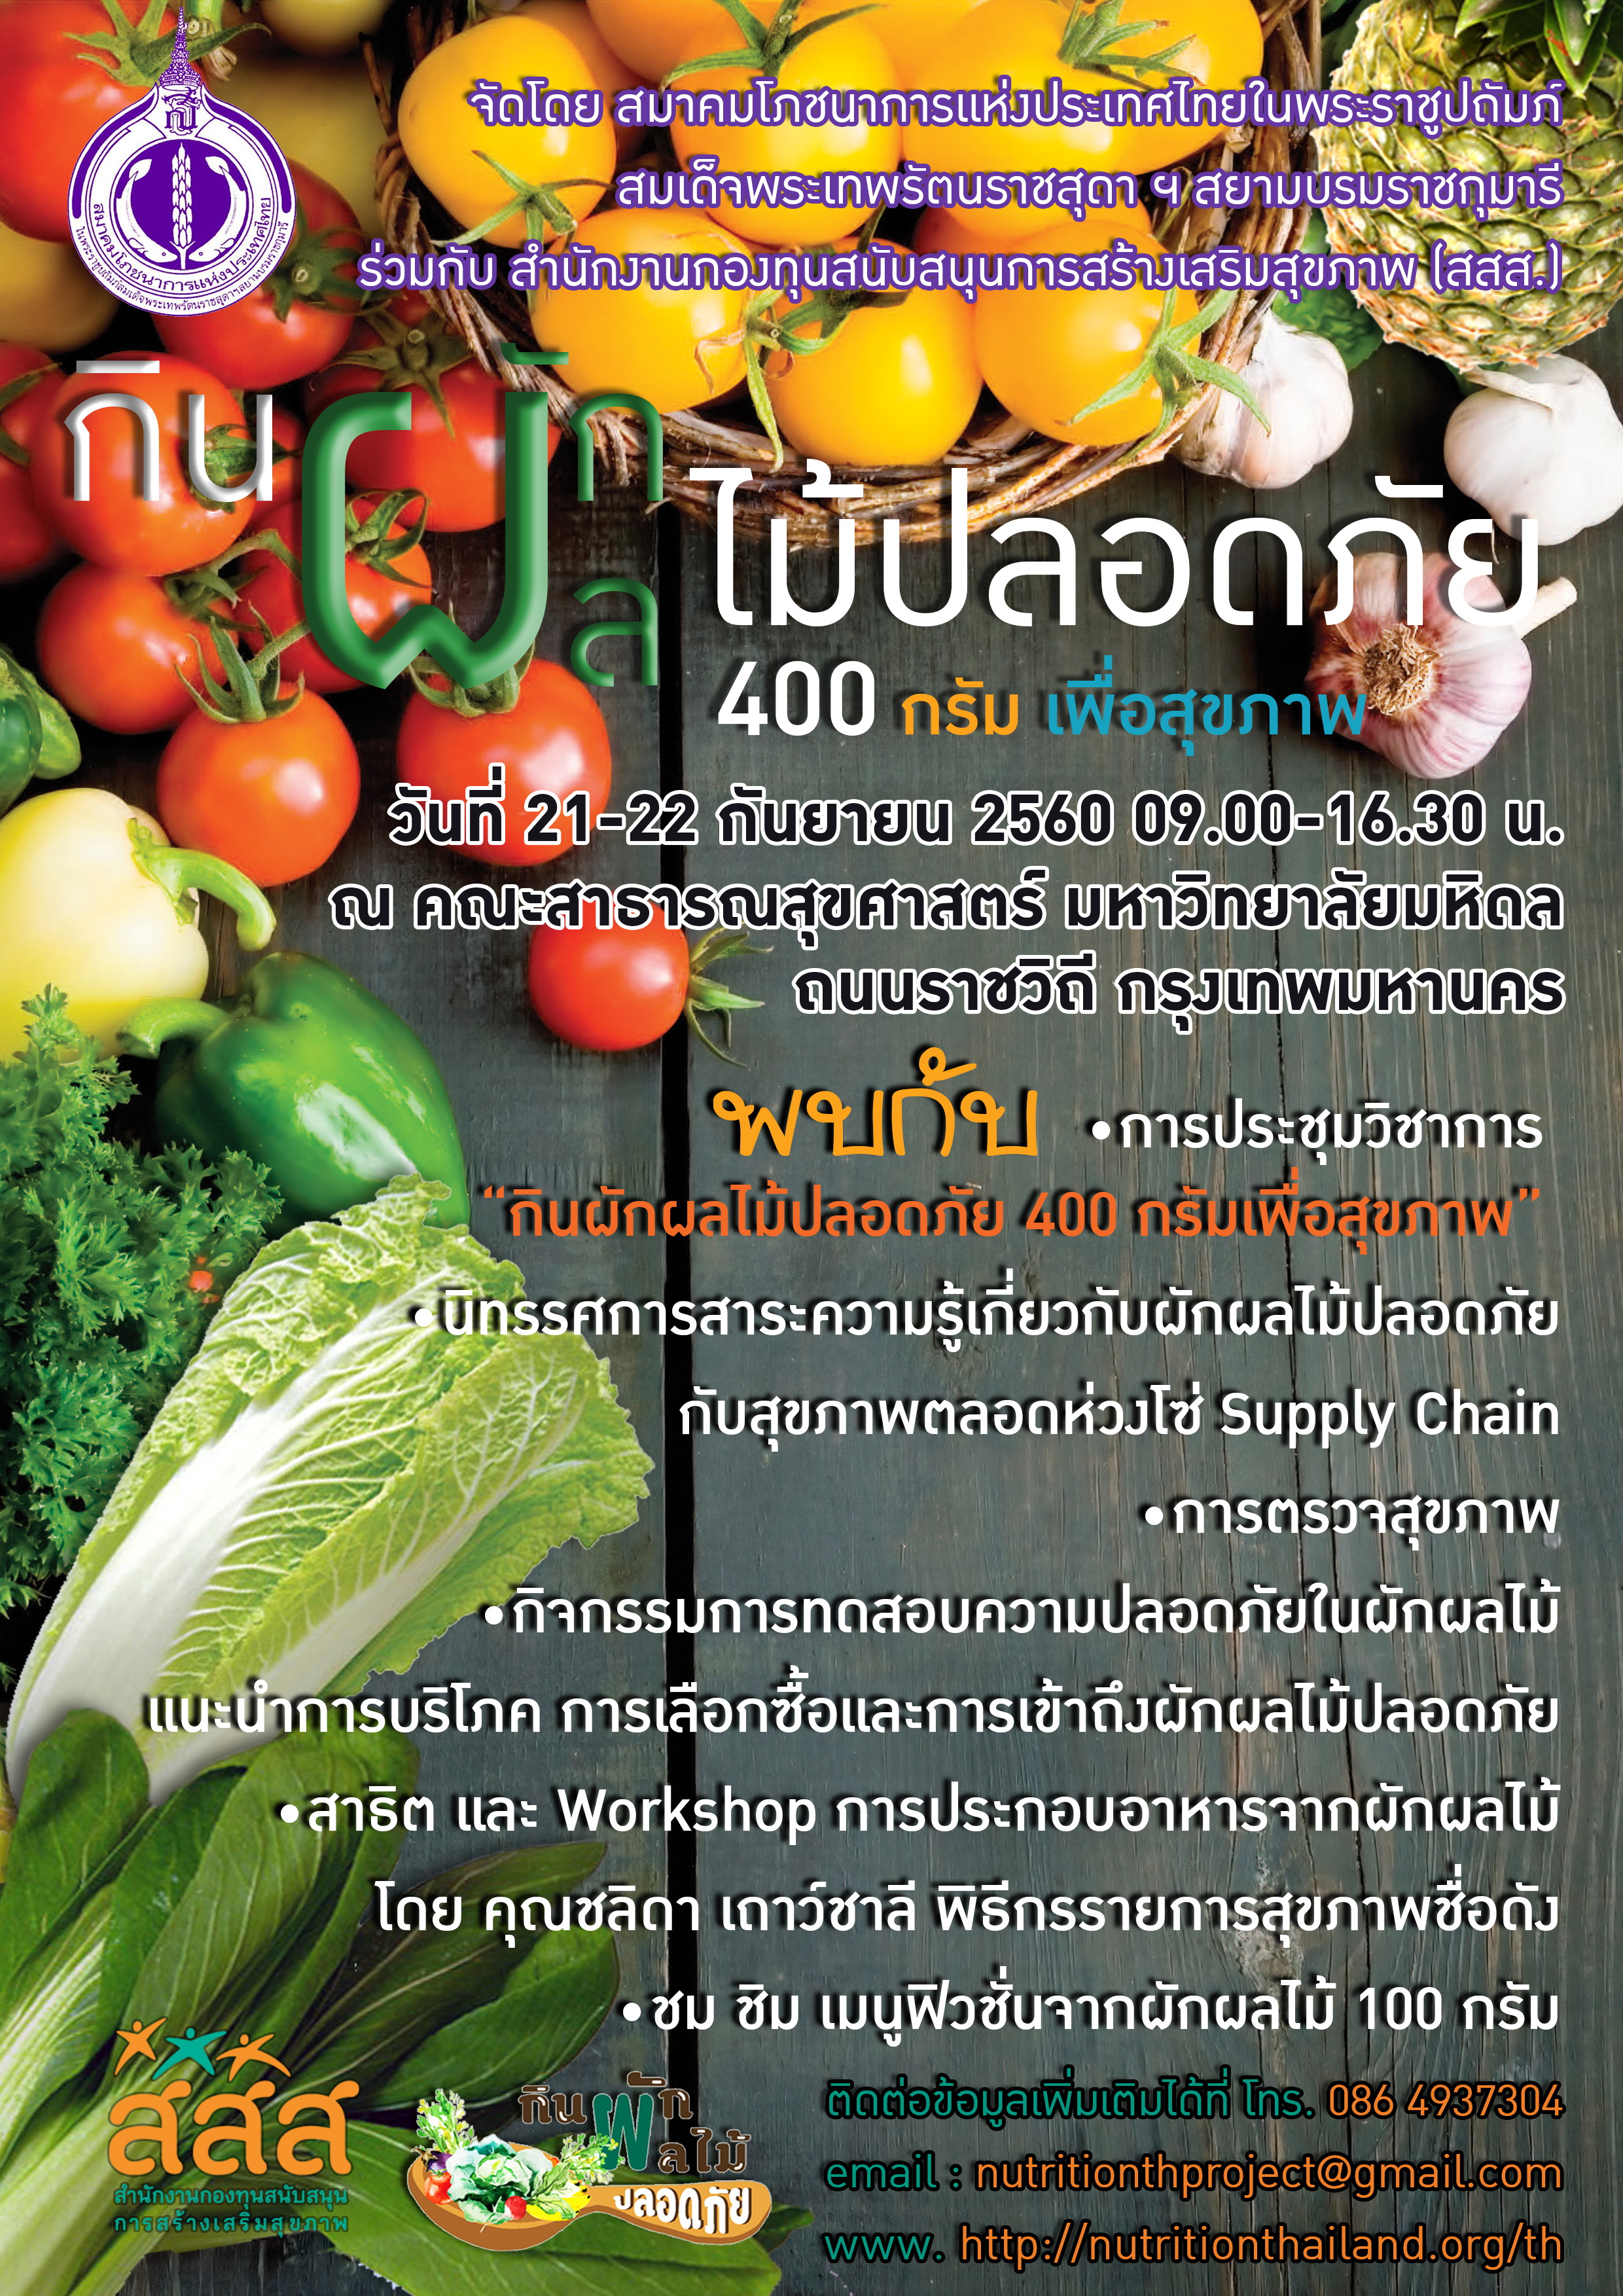 ประชุมวิชาการผักผลไม้วันละ 400 กรัม เพื่อสุขภาพ thaihealth